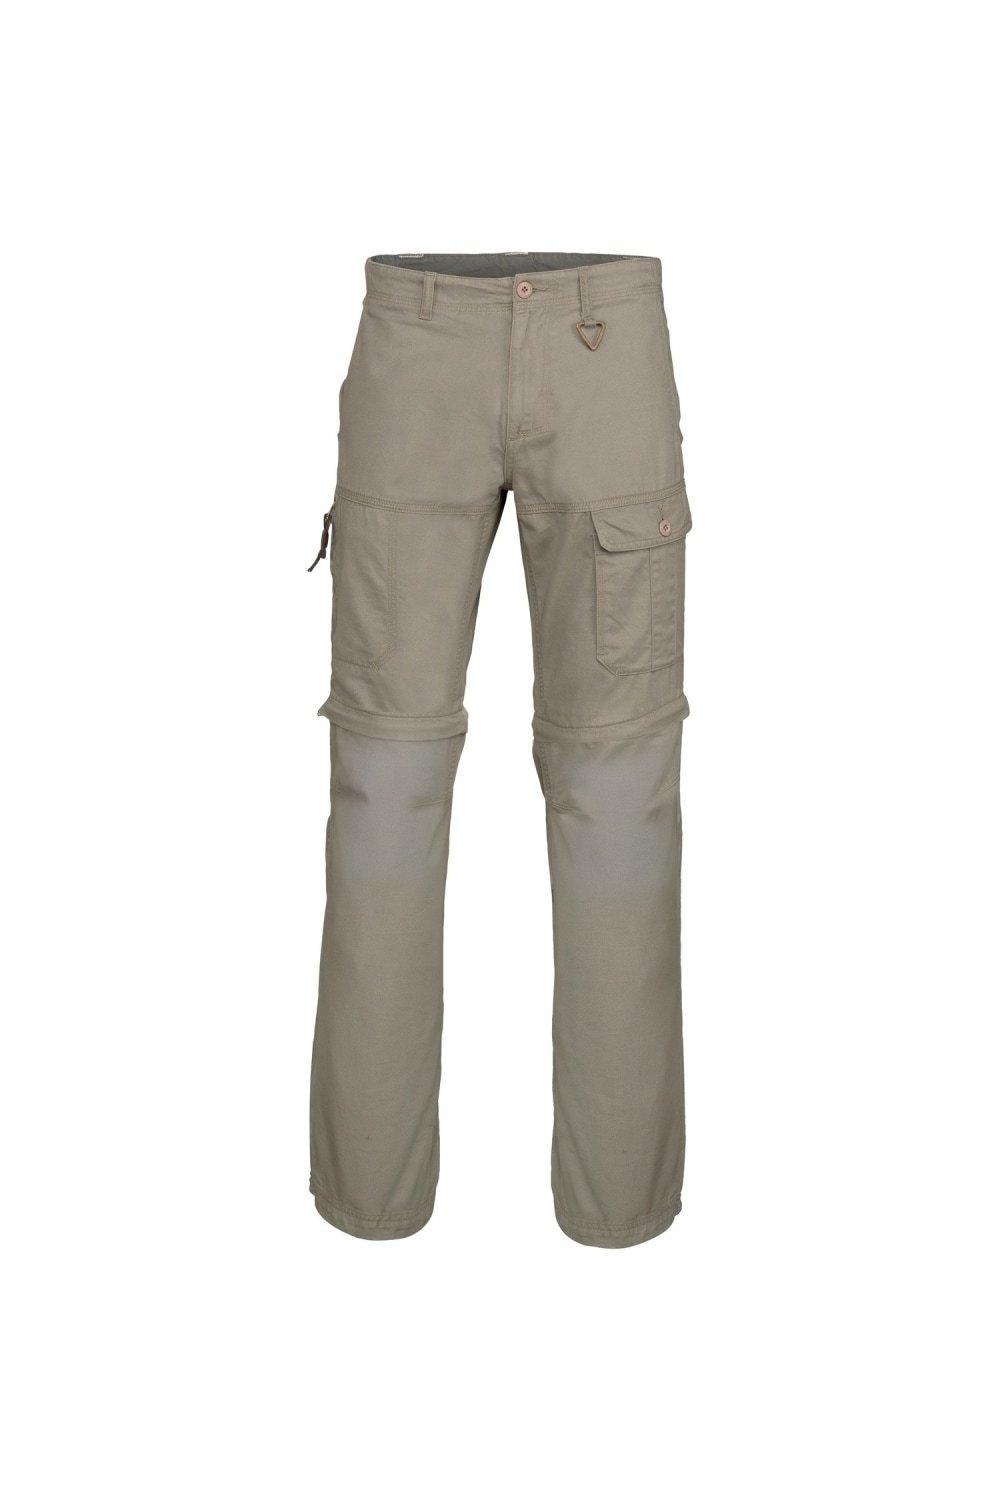 Рабочие брюки с множеством карманов на молнии (2 шт. в упаковке) Kariban, бежевый